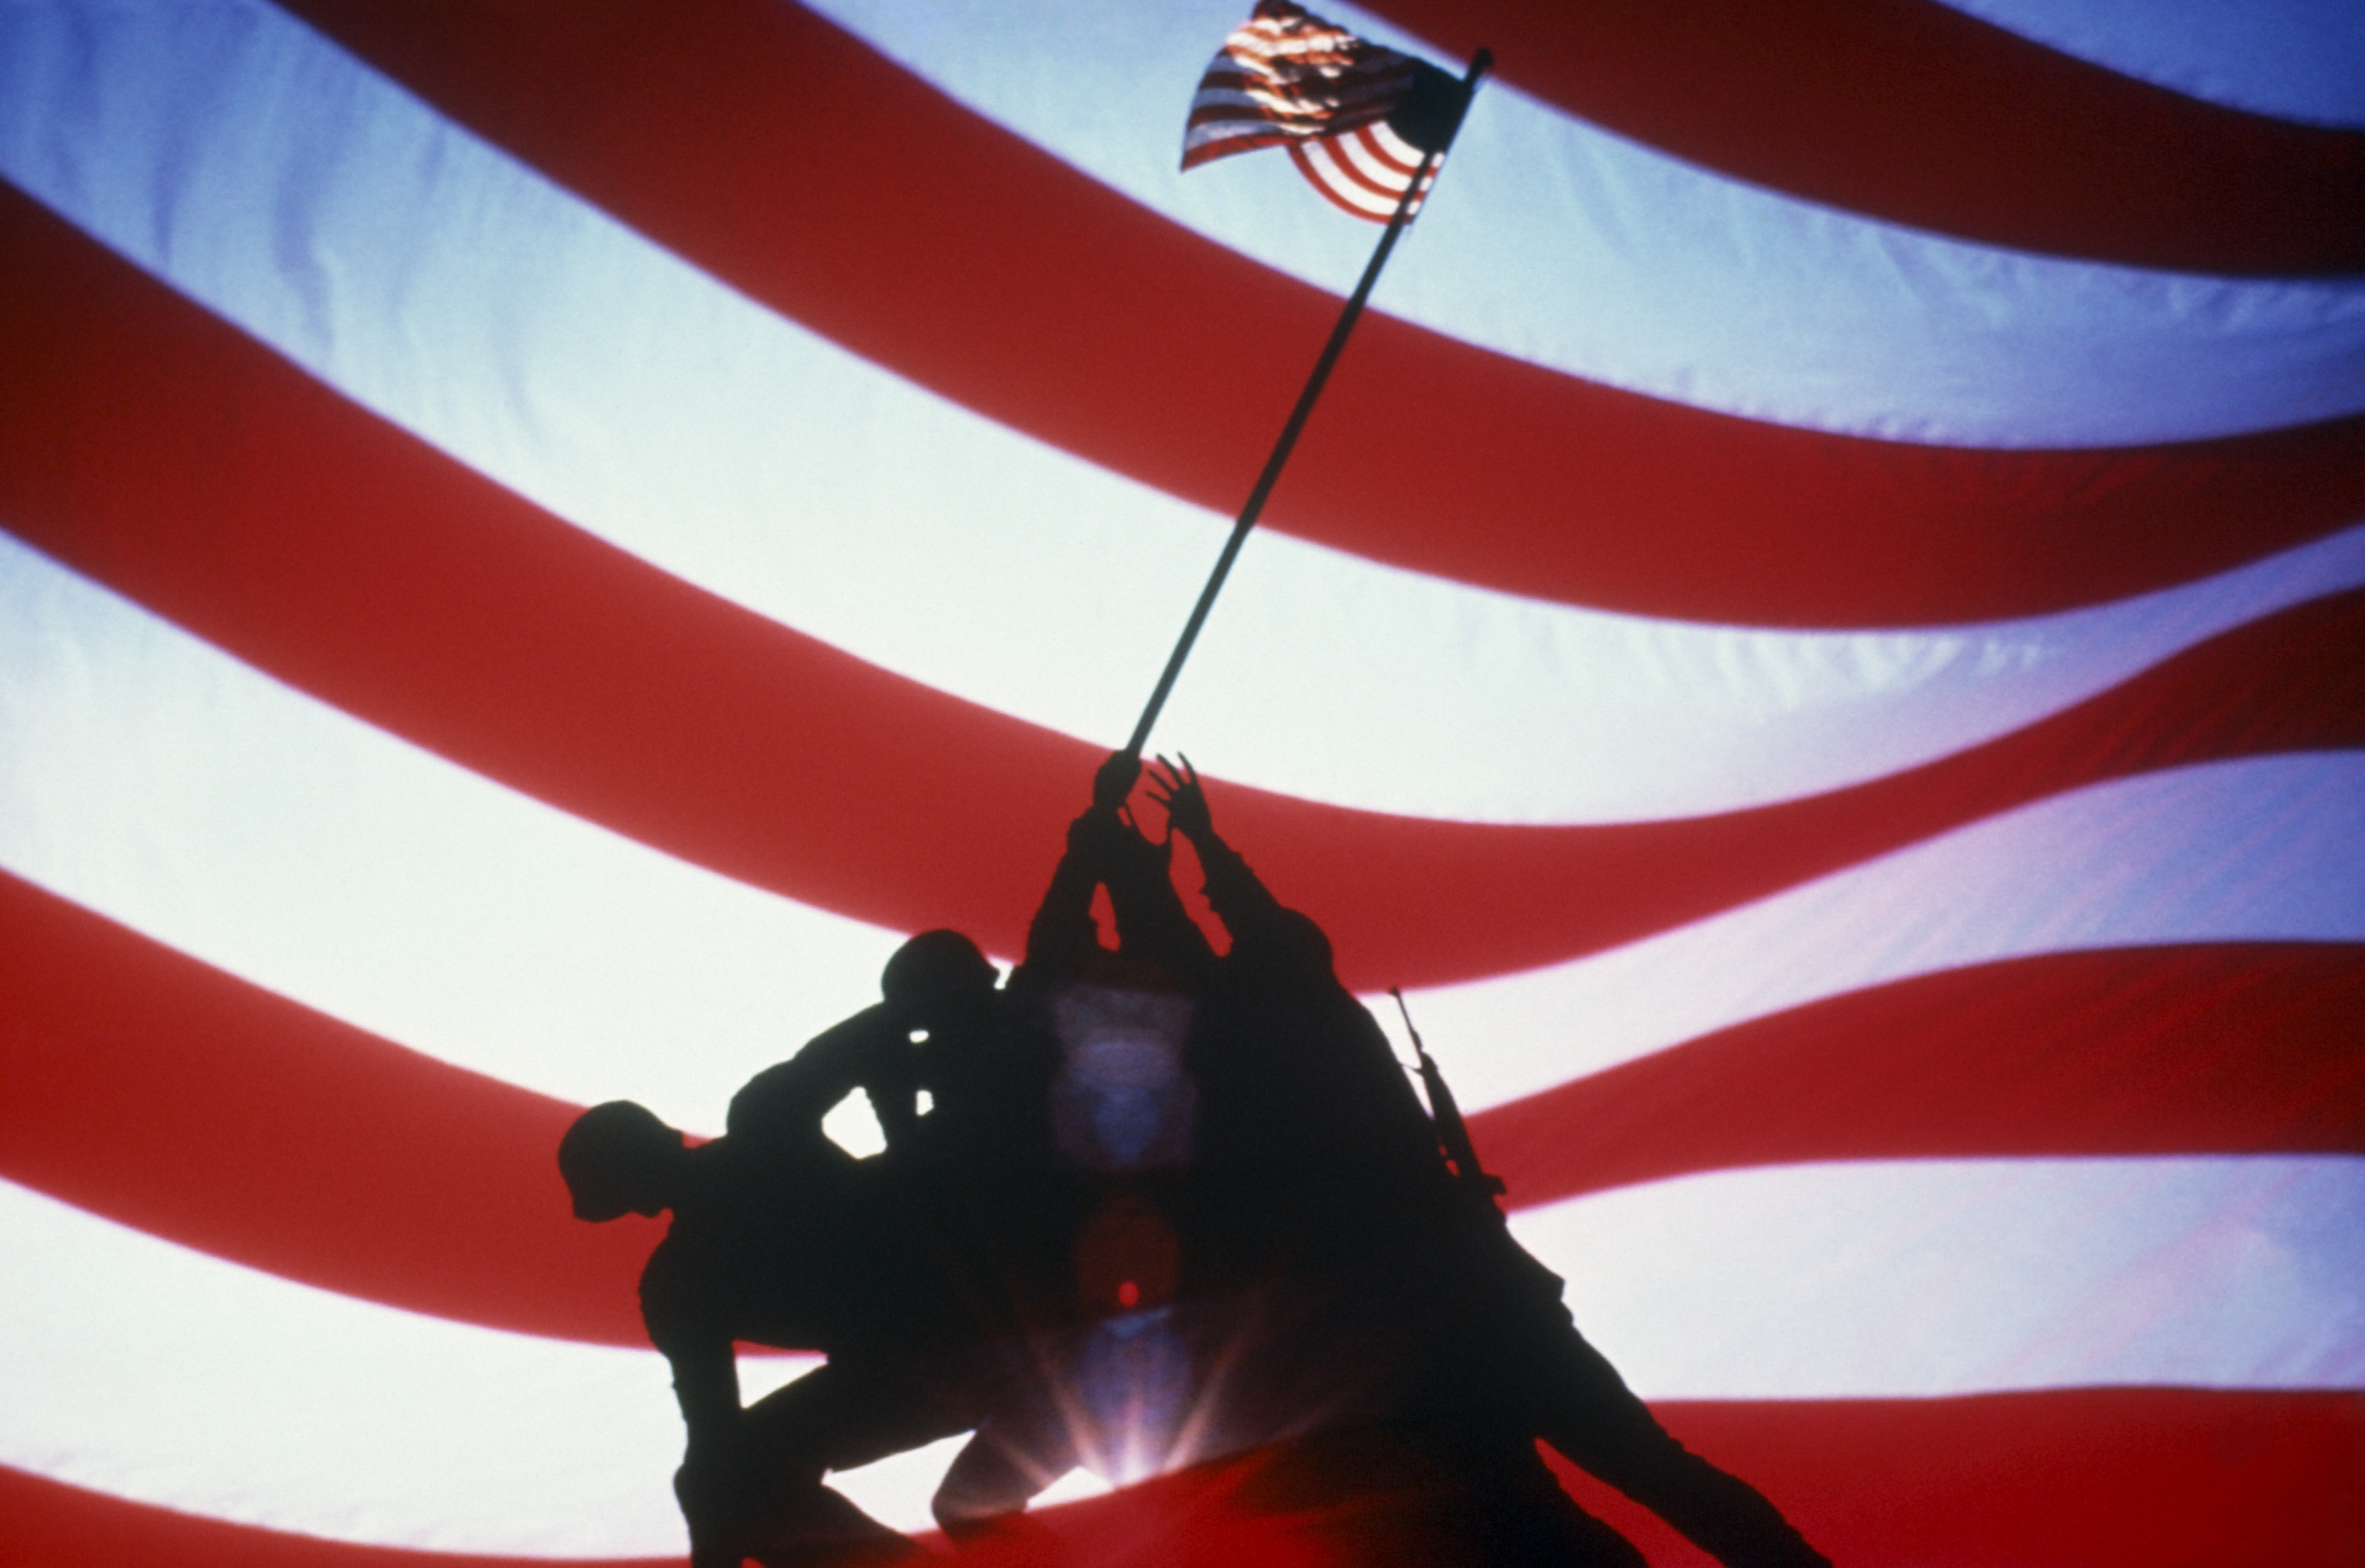 flags, USA, Iwo Jima - desktop wallpaper